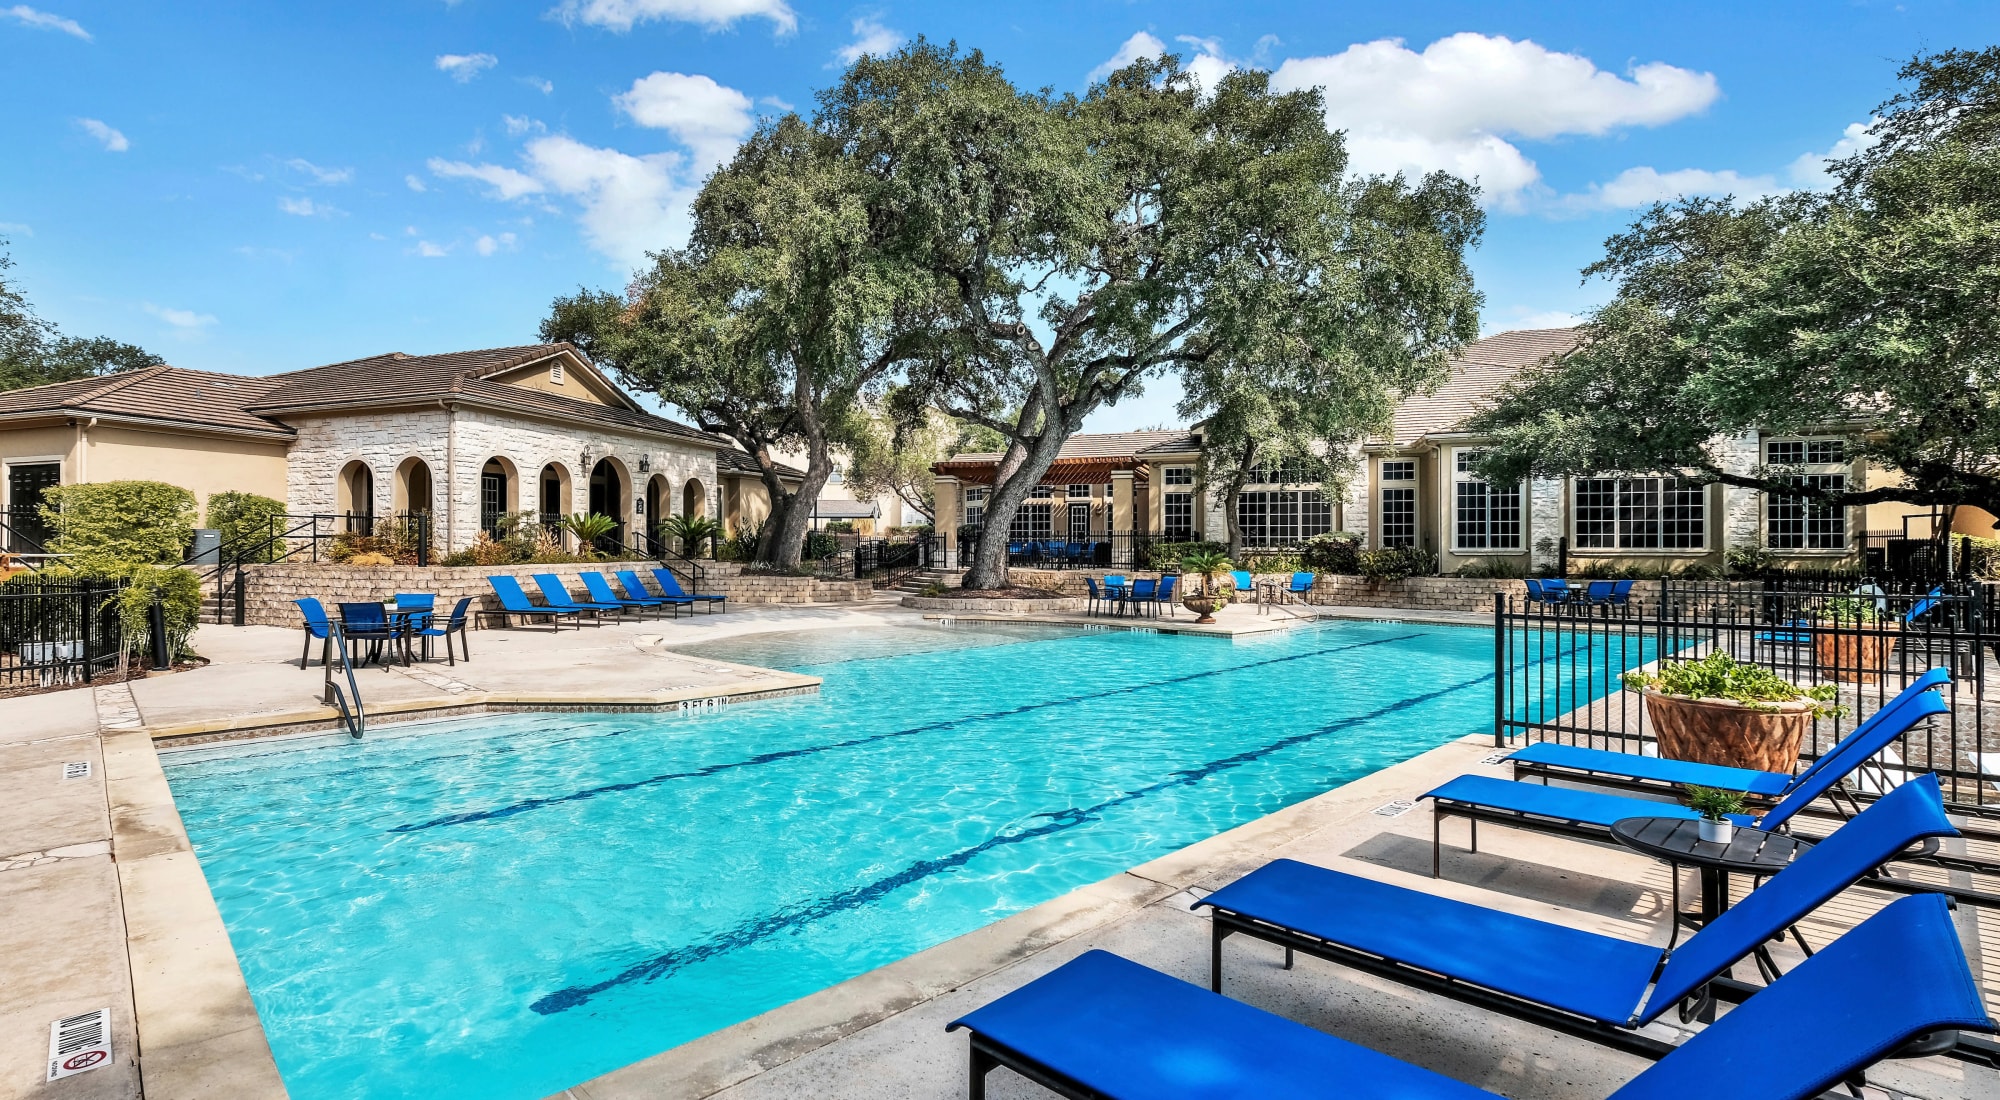 Swimming pool at Villas of Vista Del Norte in San Antonio, Texas